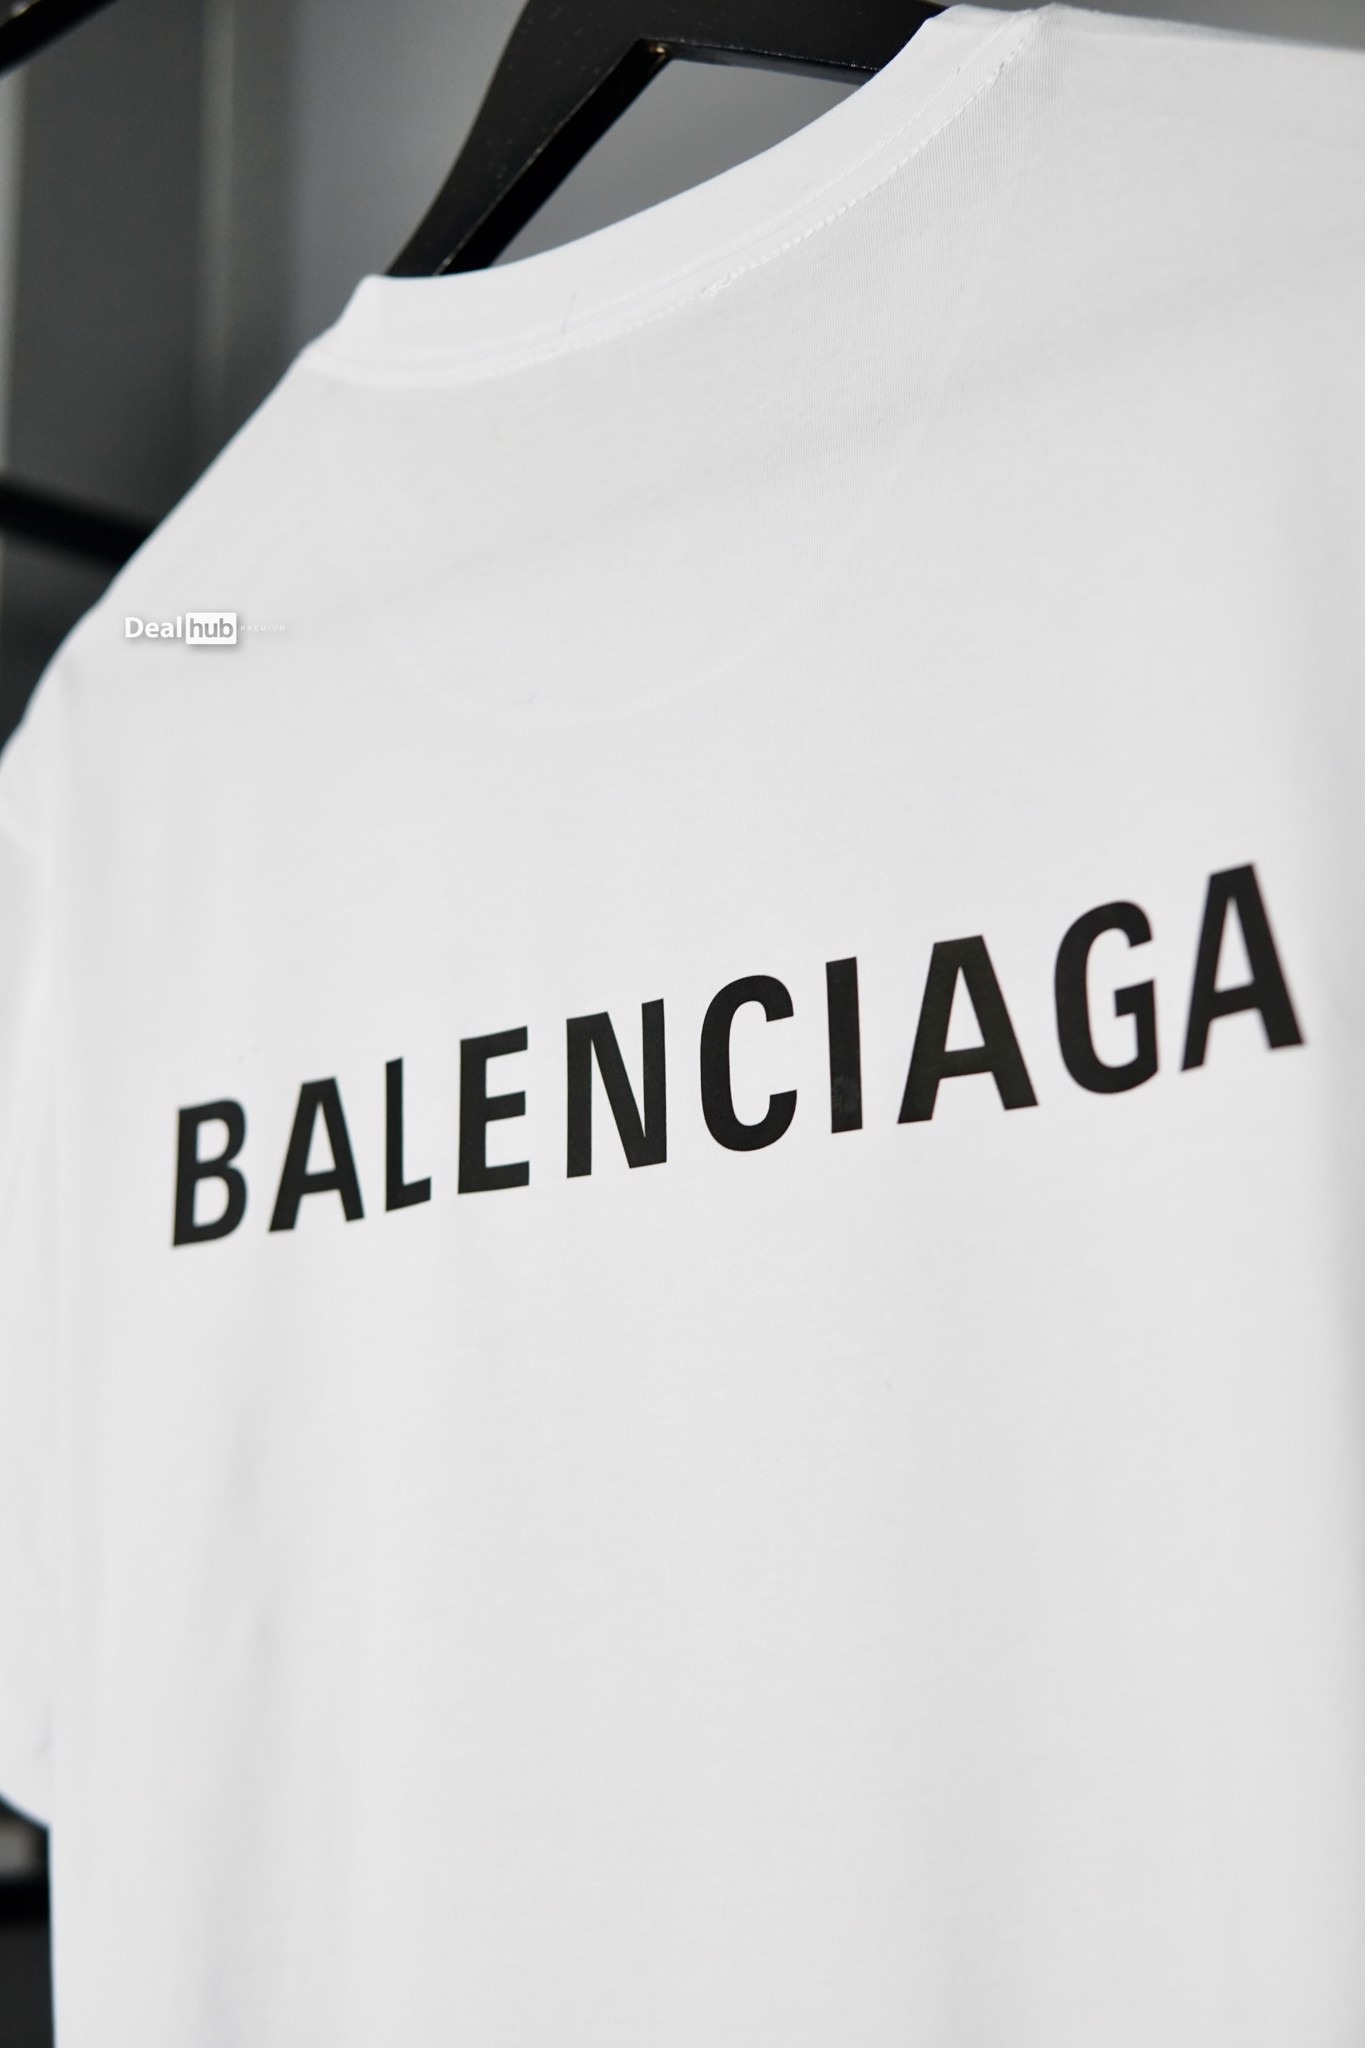 Balenciaga logo vector free download  Brandslogonet